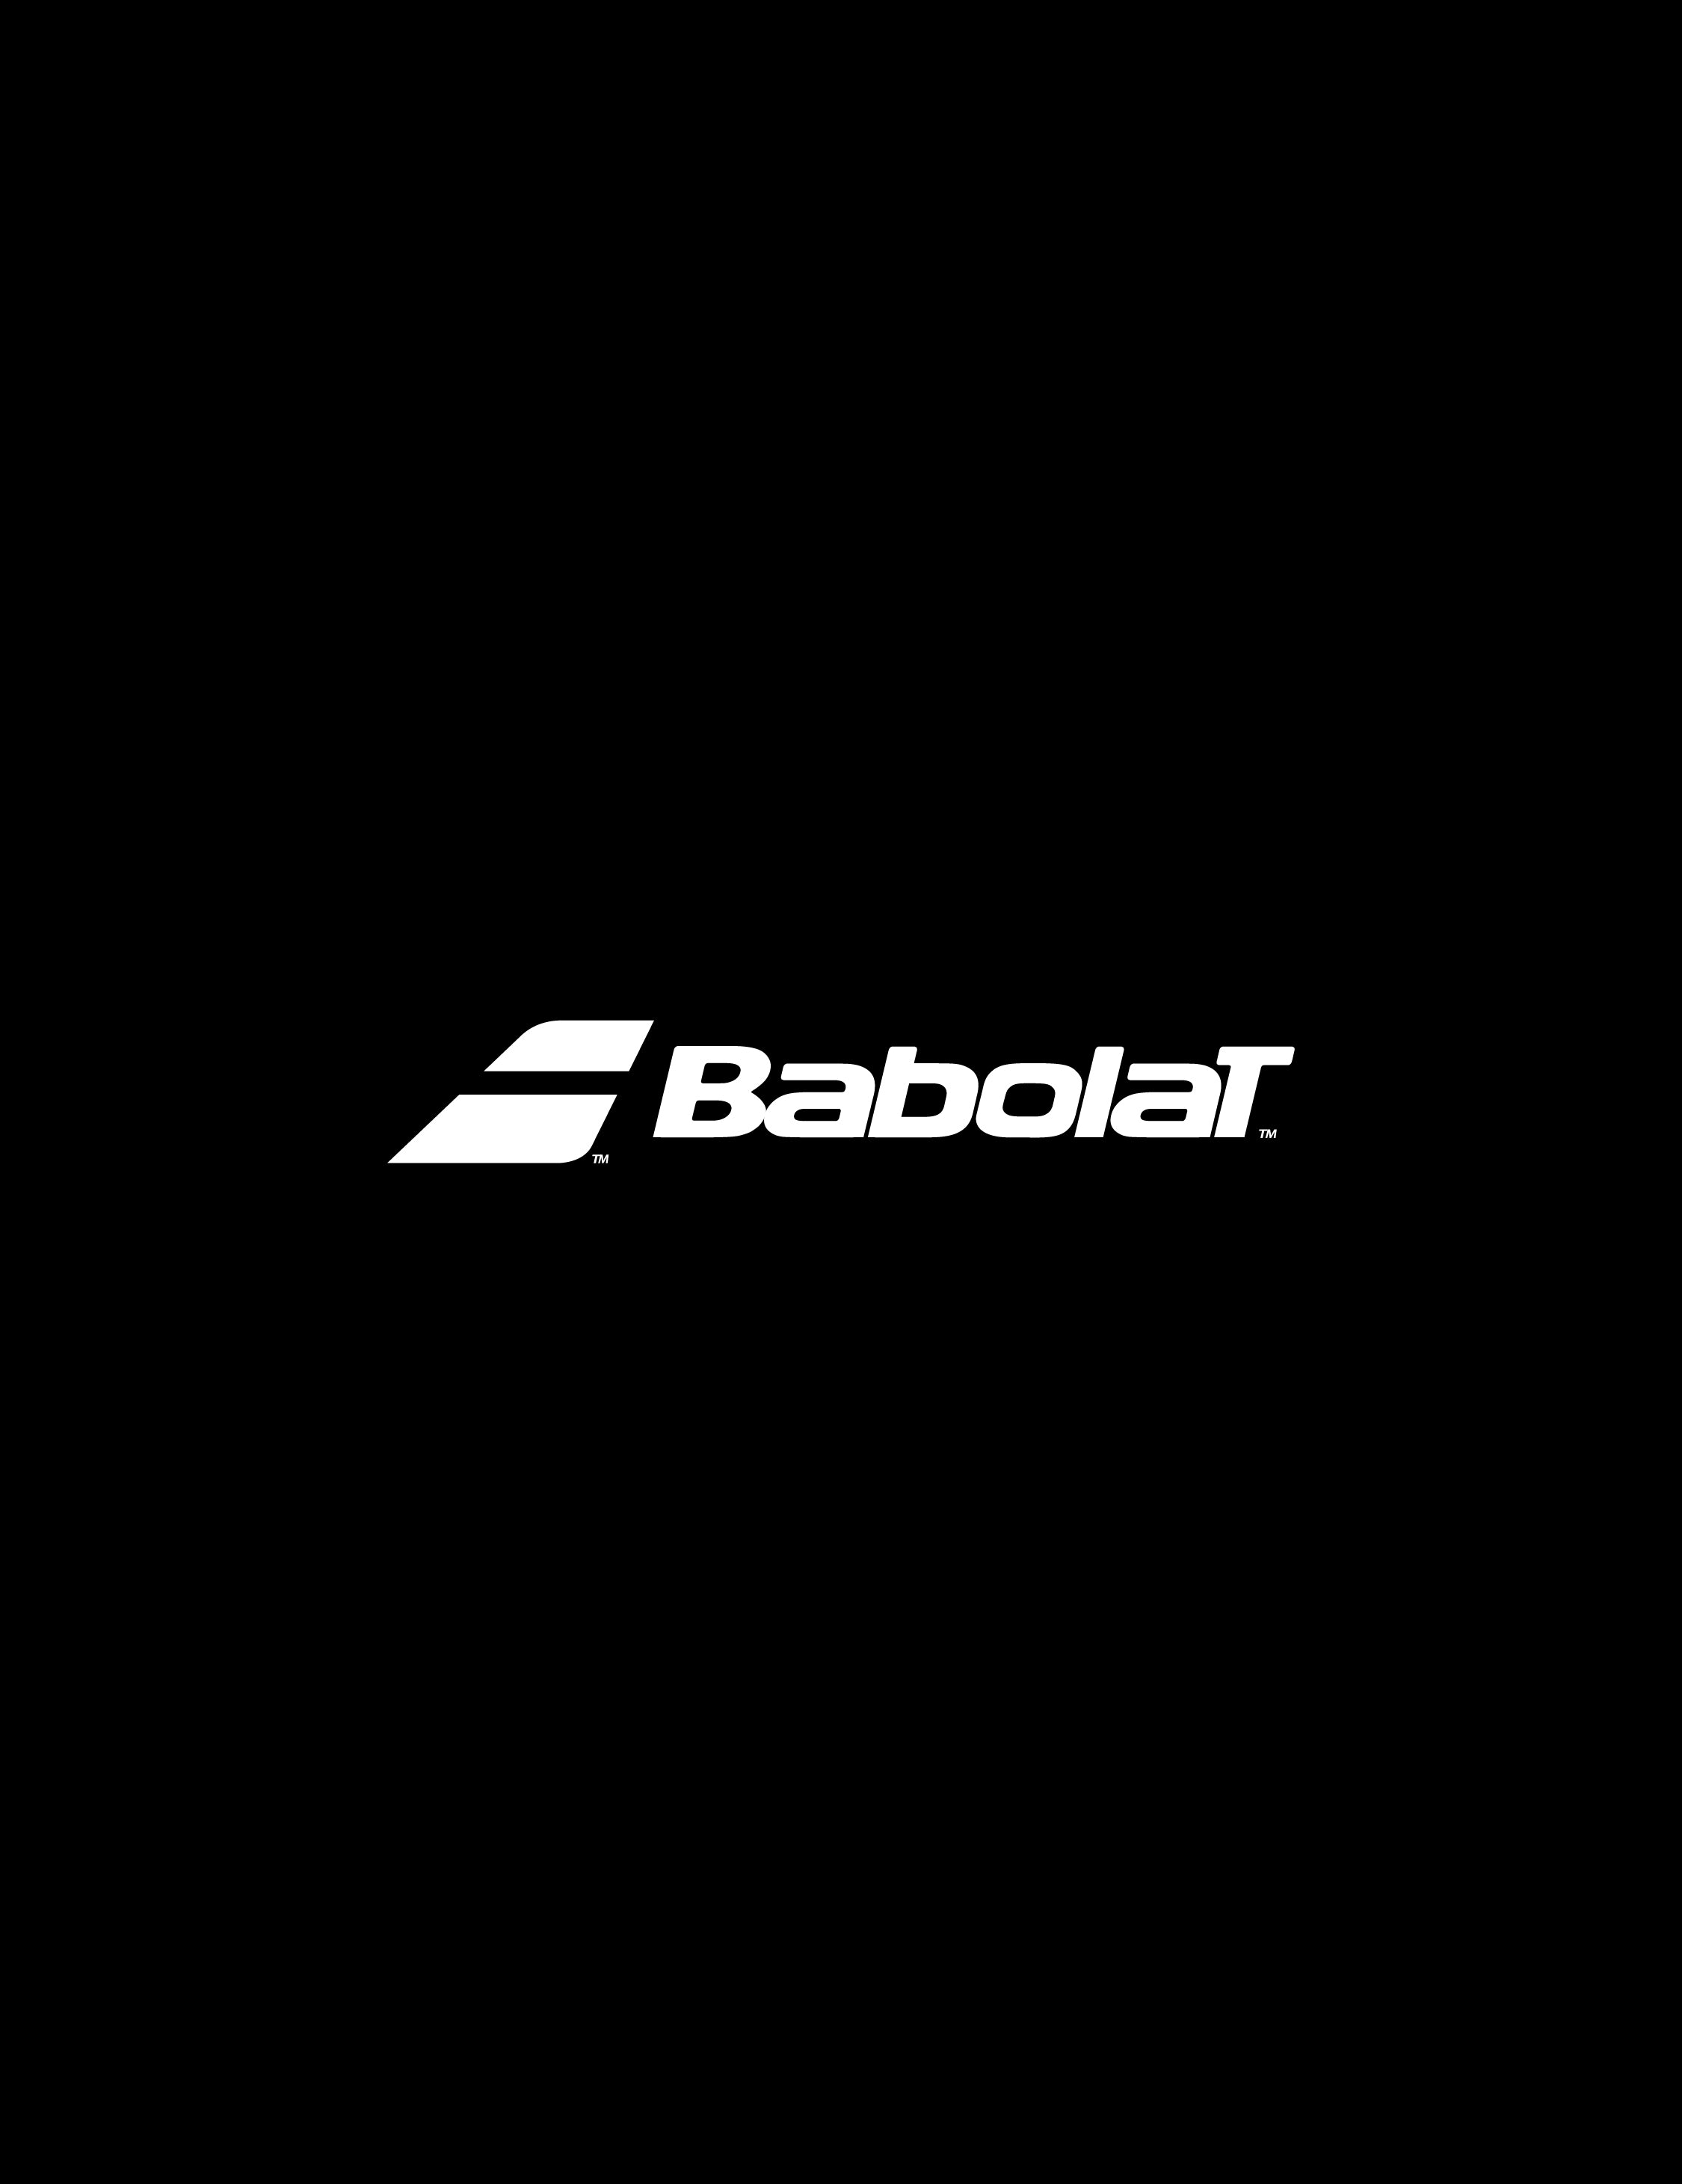 Babolat Partnership